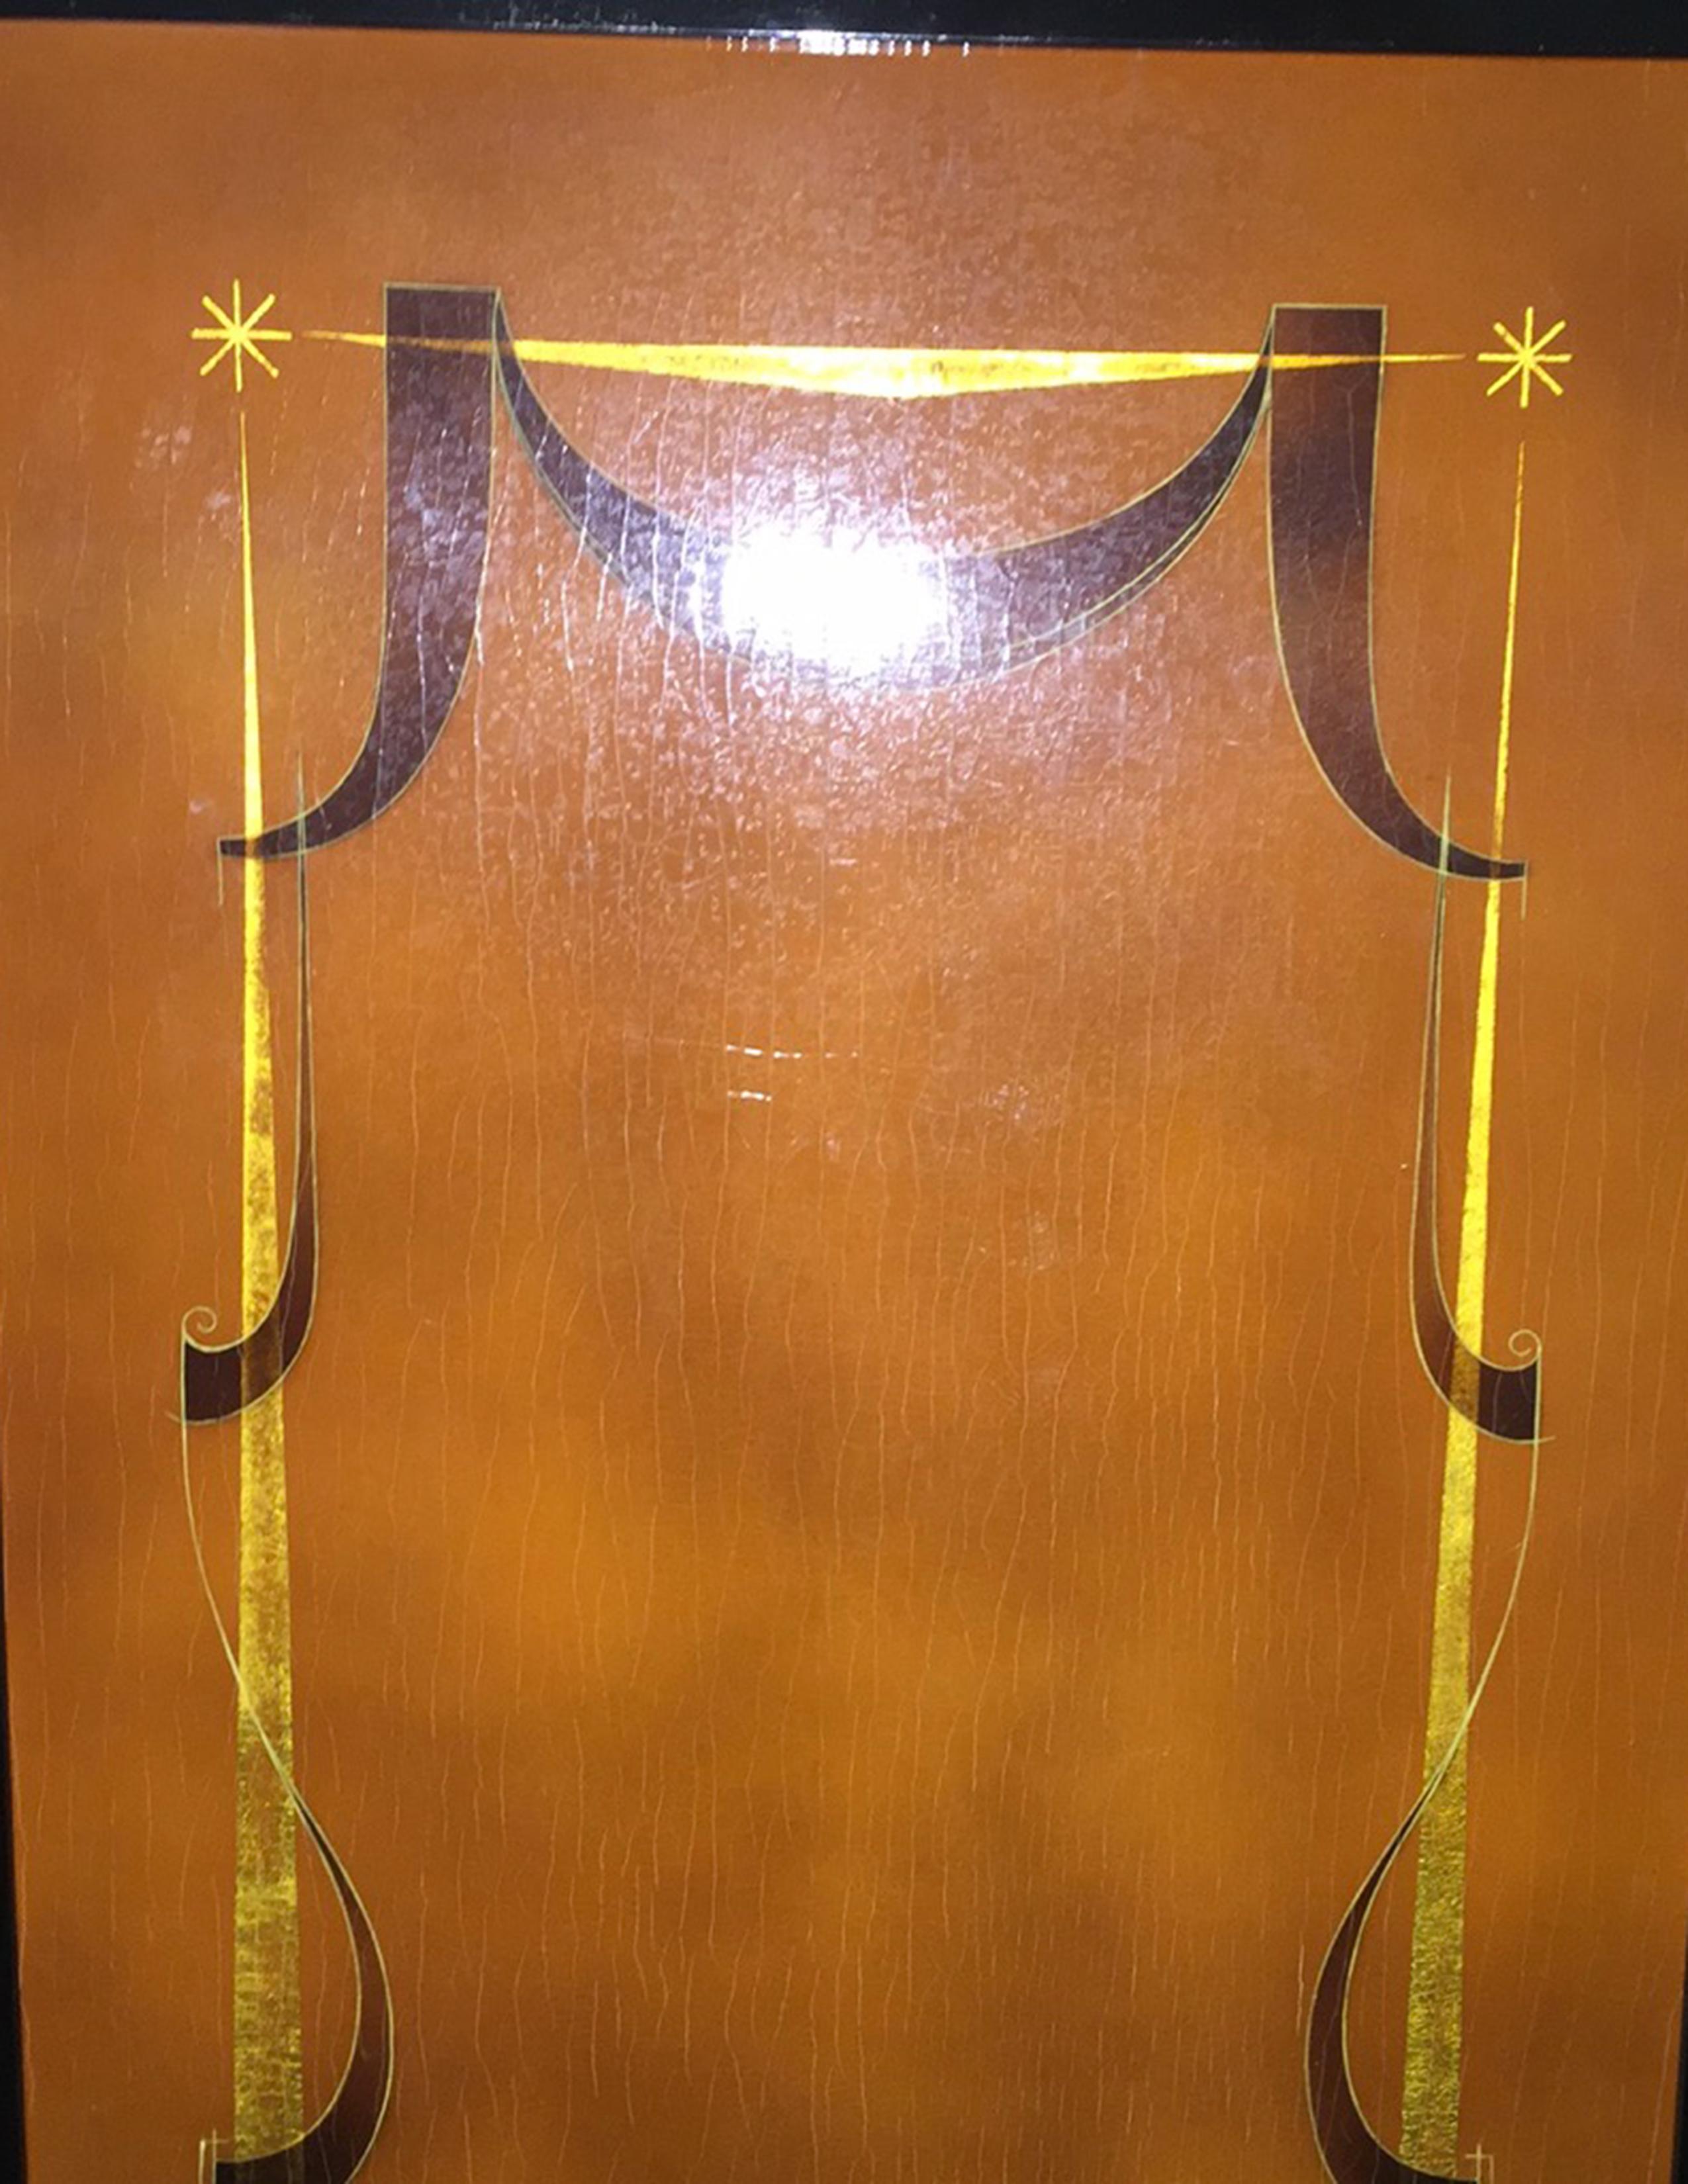 Ebonisiertes Holz, roter Lack und aufgetragene Blattgolddekoration mit Messingschlüsseln und -säbeln. Der dreiteilige Schrank steht auf konisch zulaufenden runden Beinen. Die Türen sind mit neoklassizistischen Motiven in Blattgoldfarbe versehen. Das